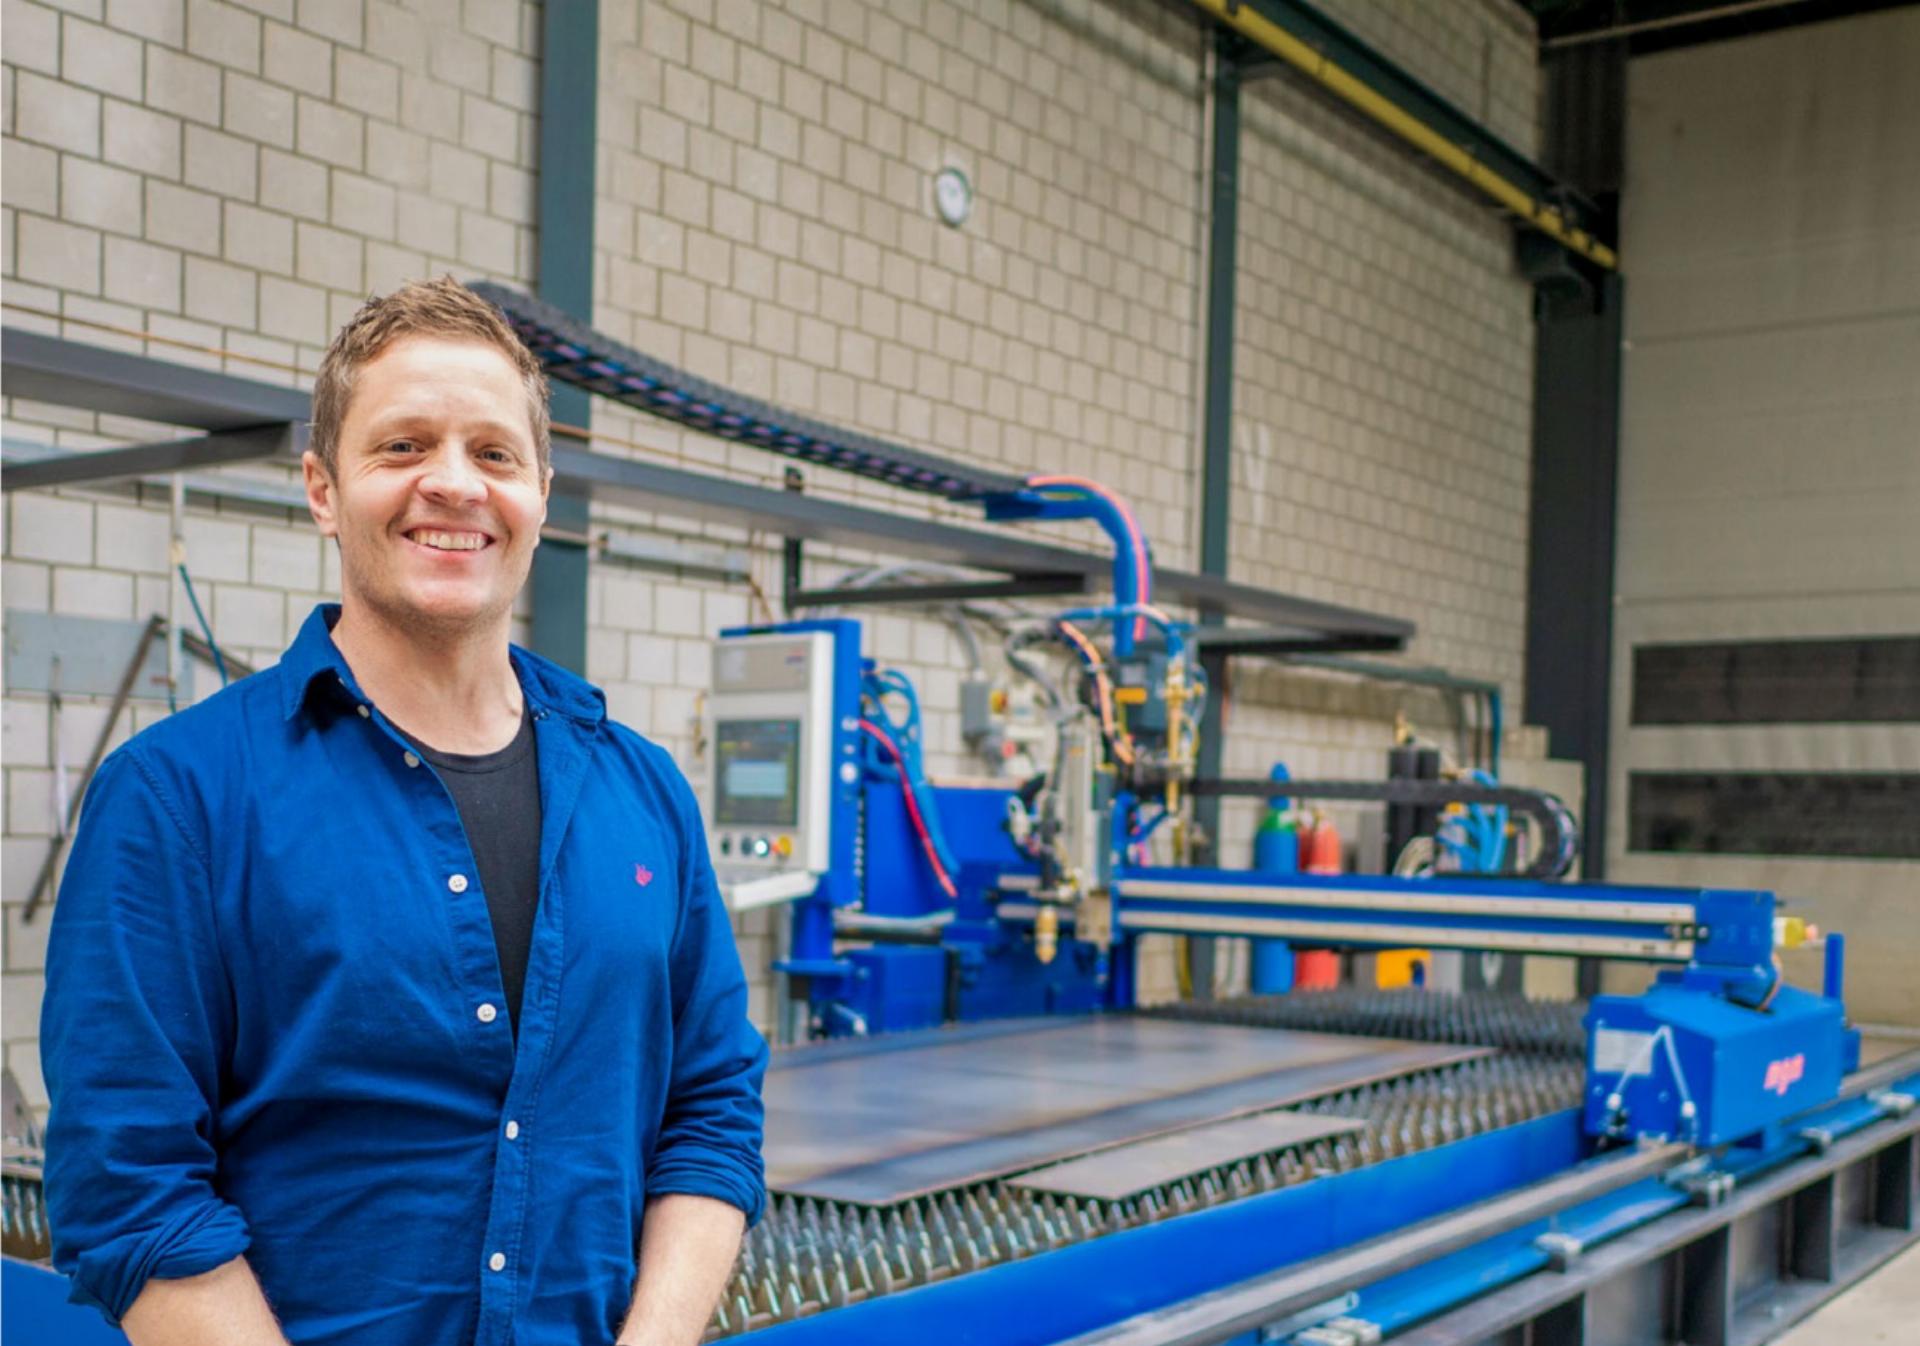 BMT-Geschäftsführer Thomas Brügger ist überzeugt, dass die moderne CNC-Plasma-Autogen Schneidemaschine im Hintergrund bald gut ausgelastet sein wird. BILD: HANS RUDOLF SCHNEIDER